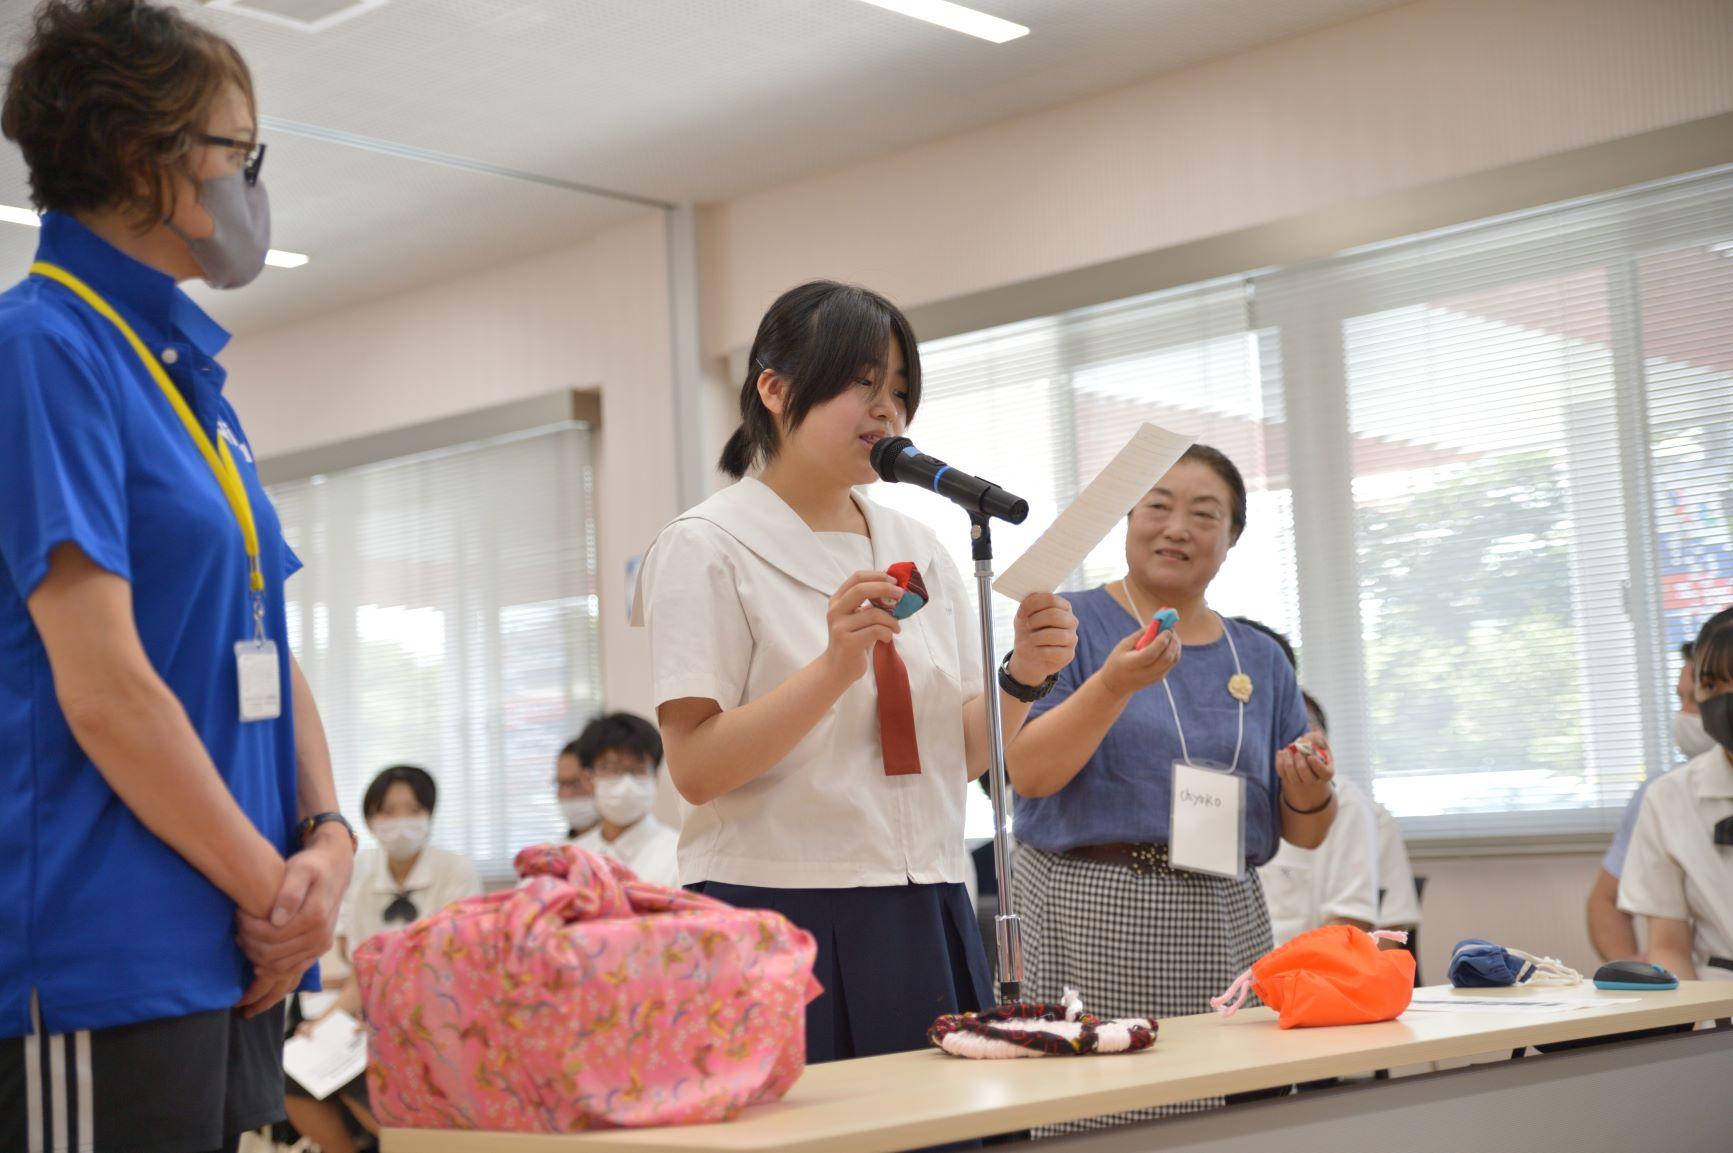 オンライン交流会にて、布製の御手玉を紹介する仁賀保高校の女子生徒等参加者たちの写真